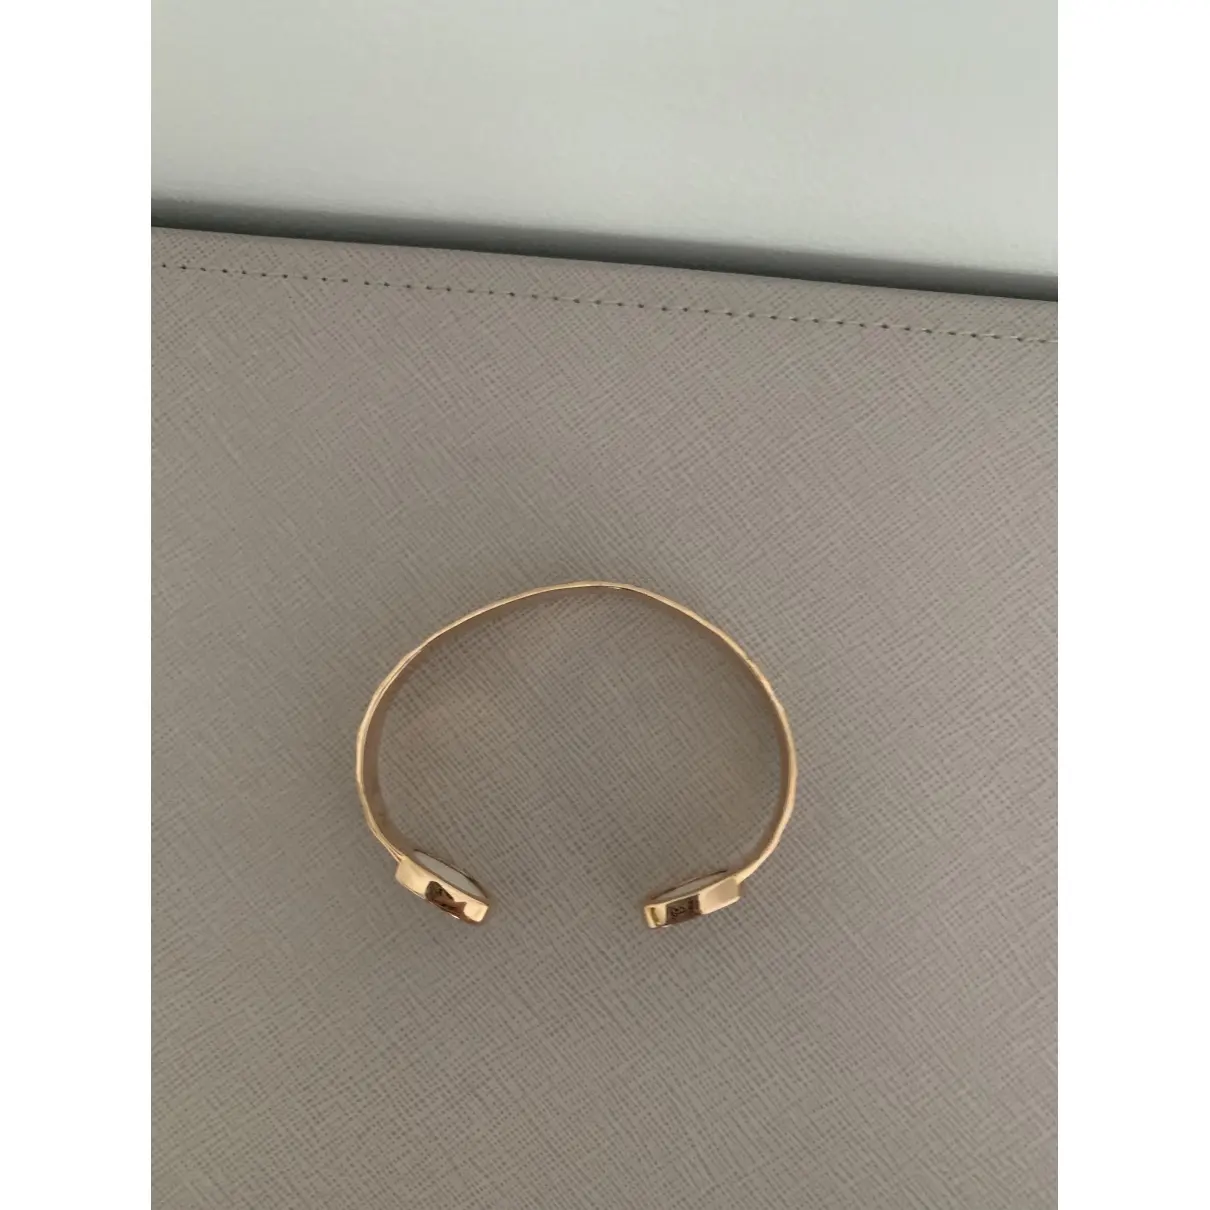 Buy Monica Vinader Pink Gold plated Bracelet online